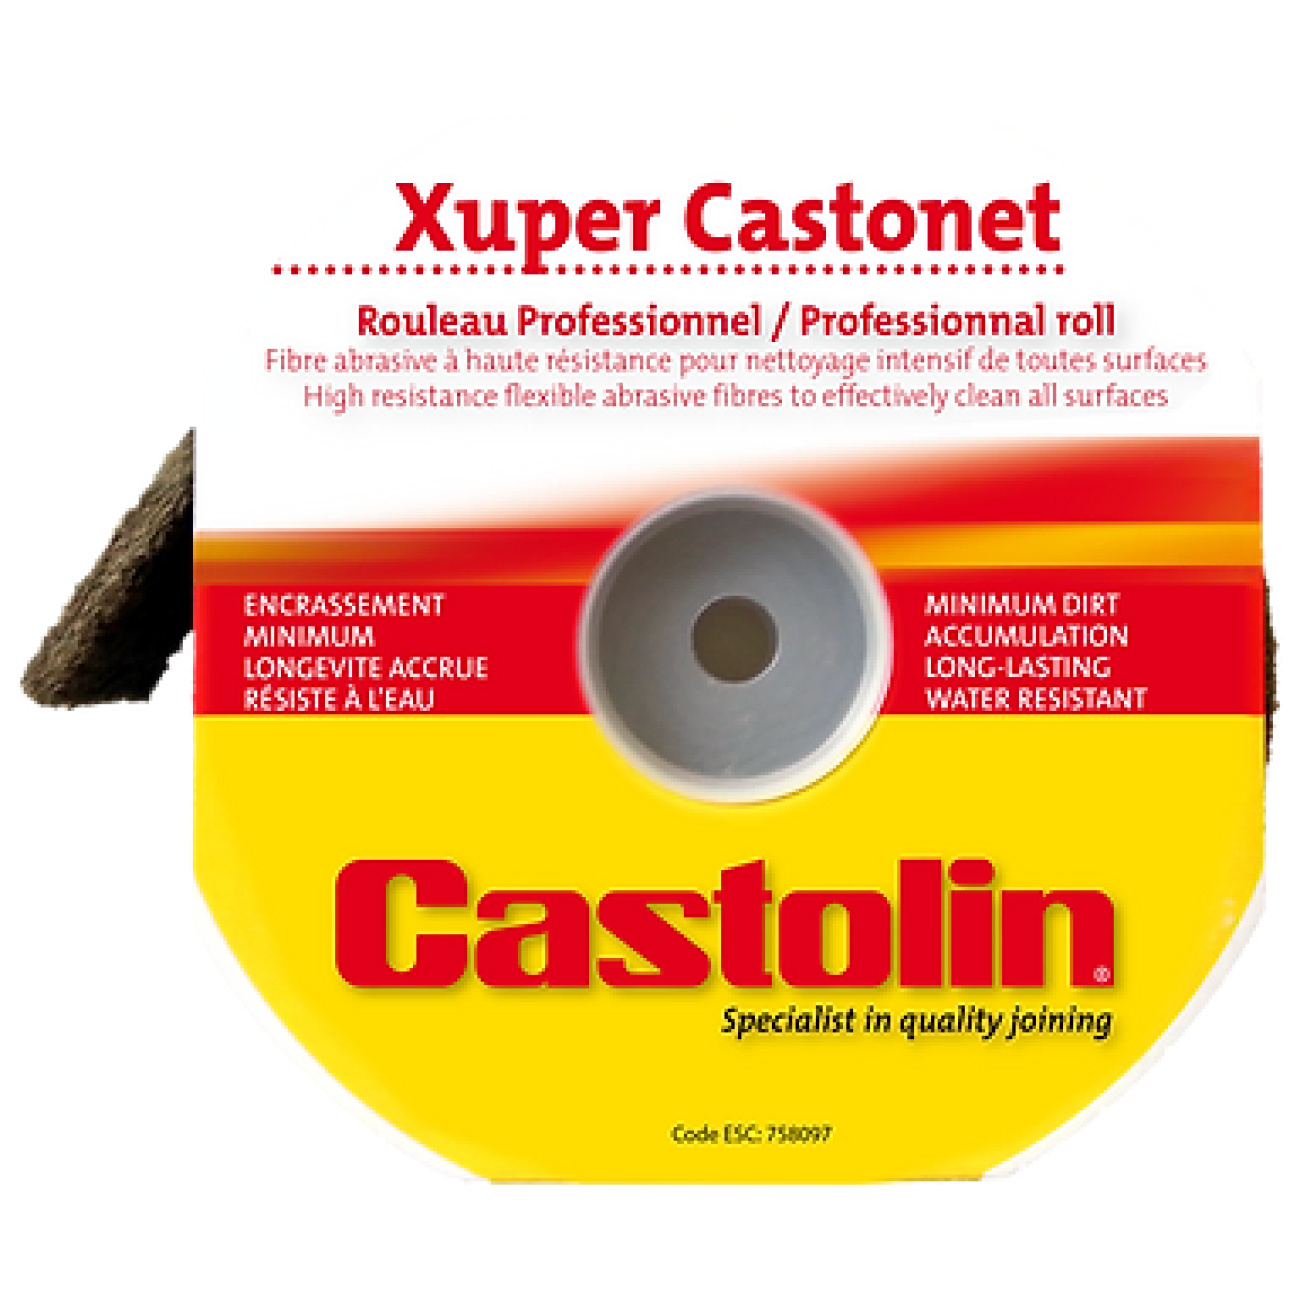 Czyścik Xuper Castonet L3000 - CASTOLIN 758097